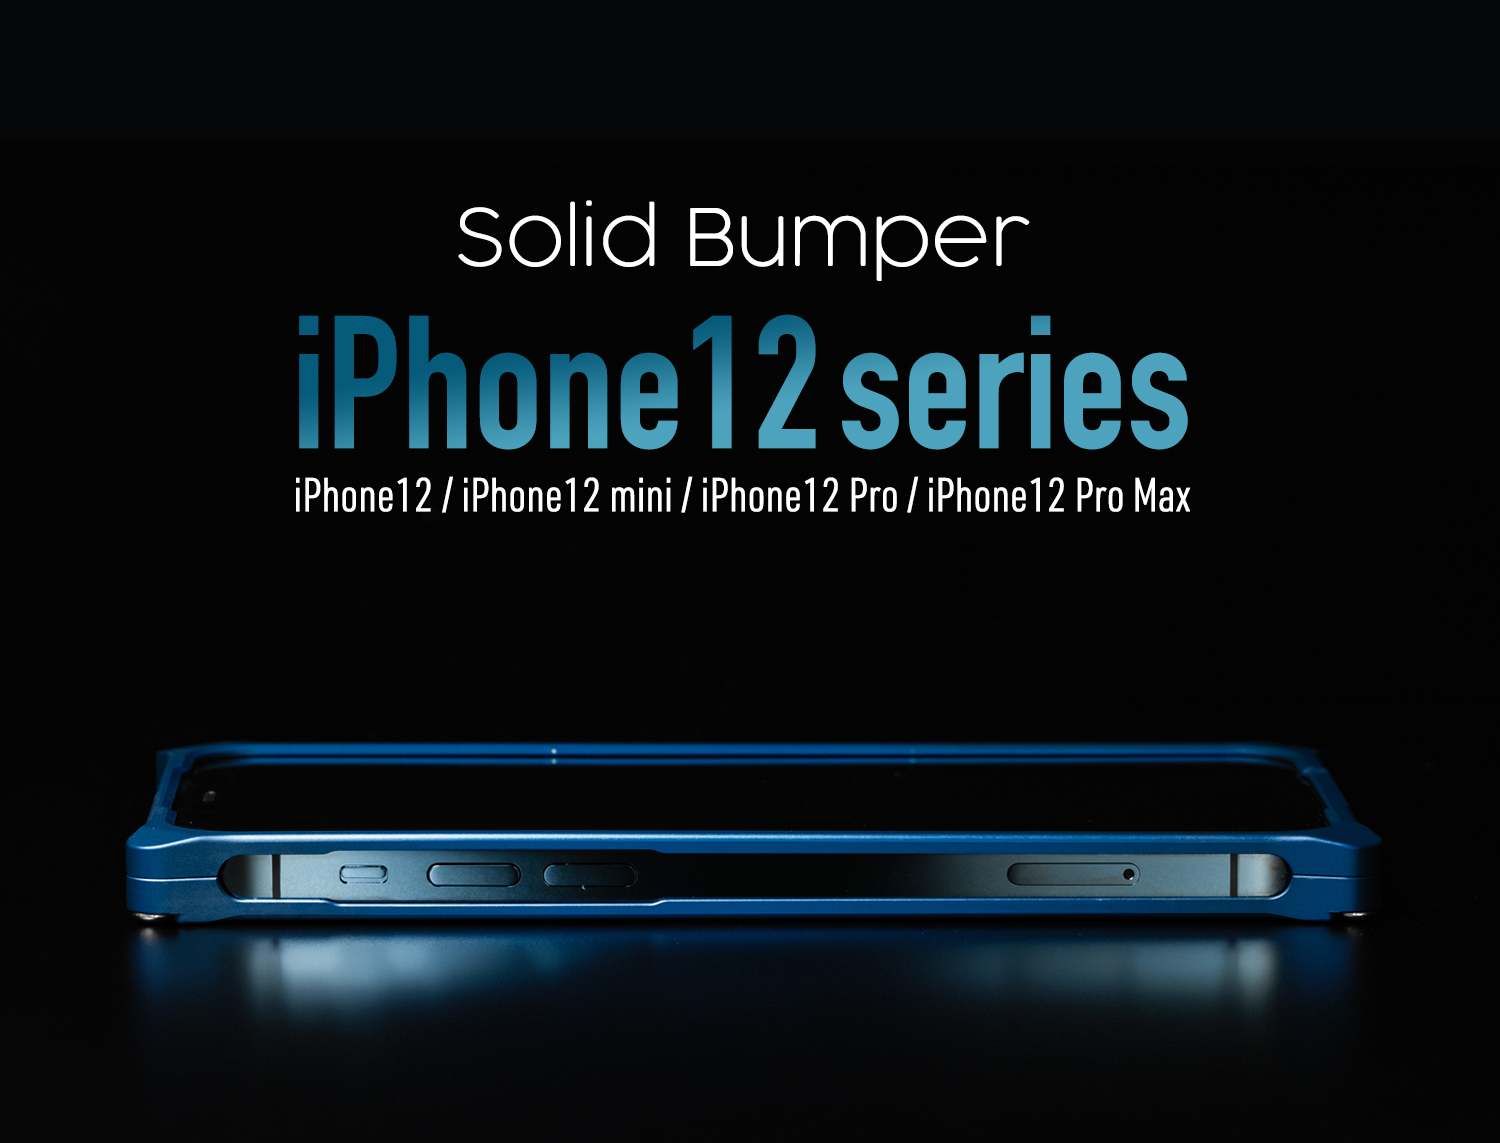 ギルドデザイン ジュラルミン削り出しケース Solidbumper For Iphone 11 Pro 11 Pro Max に関するご案内